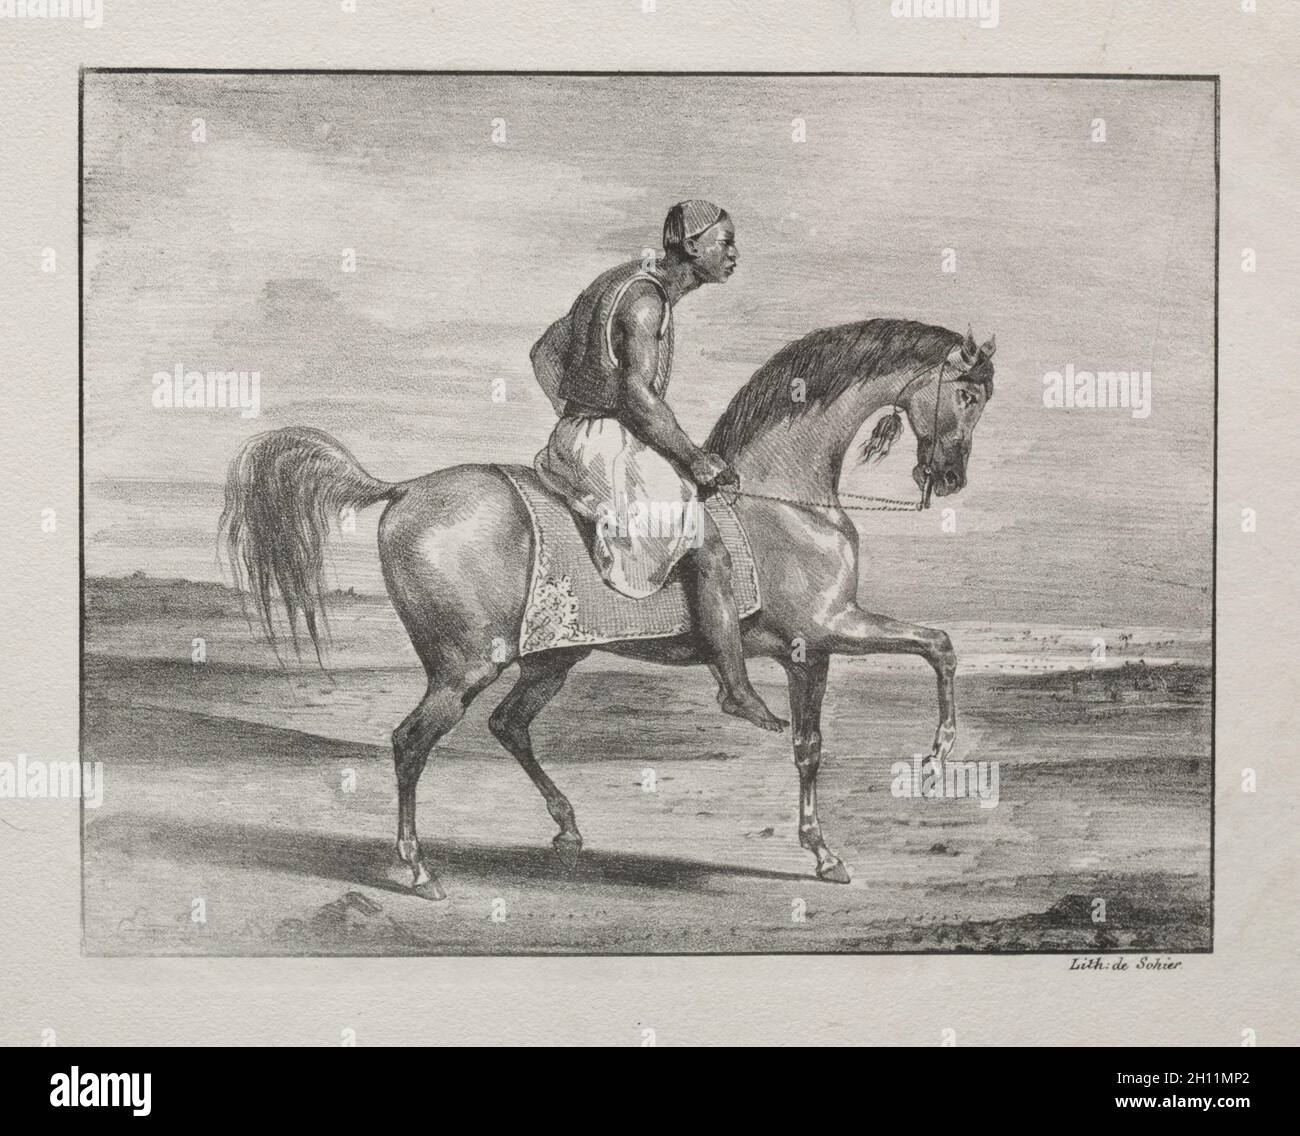 African a cavallo, 1823. Eugène Delacroix (francese, 1798 - 1863). Litografia; foglio: 25,5 x 29,1 cm (10 1/16 x 11 7/16 in.); immagine: 16,4 x 21,1 cm (6 7/16 x 8 5/16 in.). Foto Stock